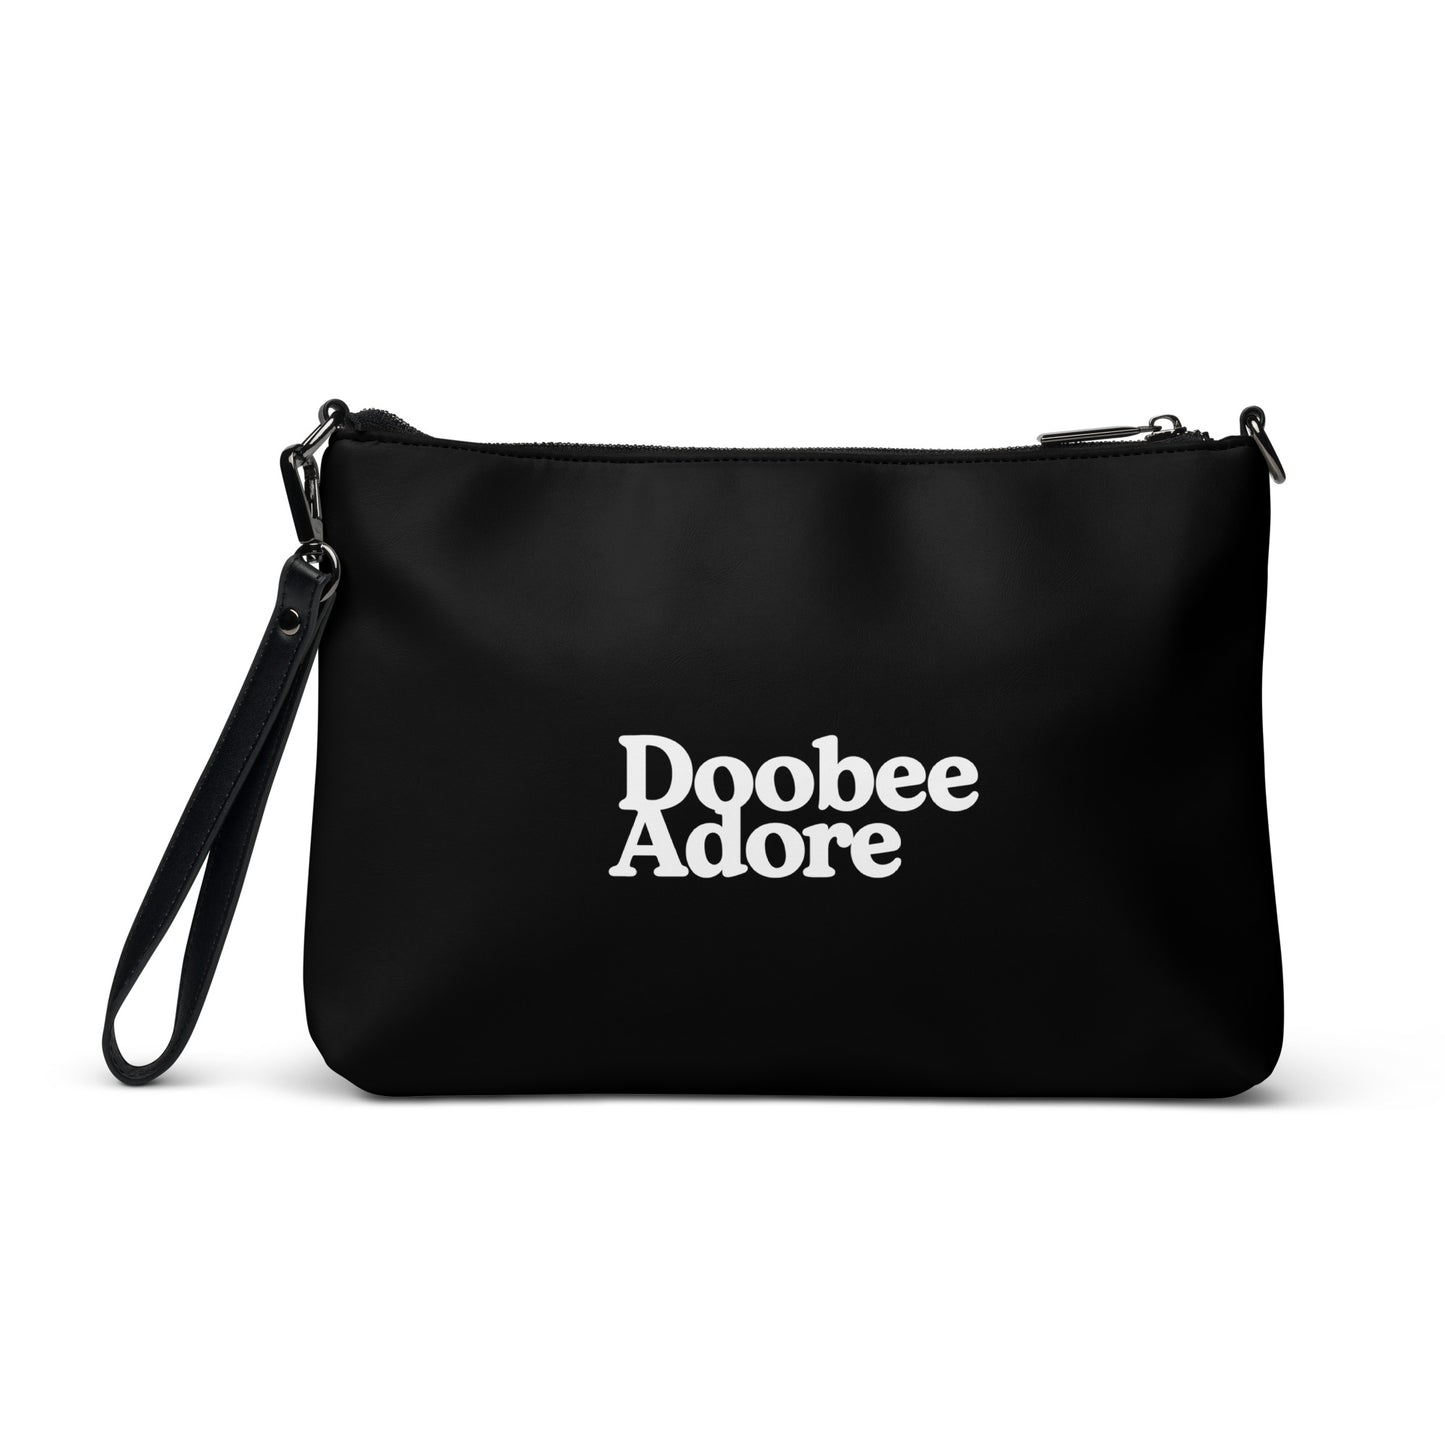 Doobee Adore Staple Cross Body Bag